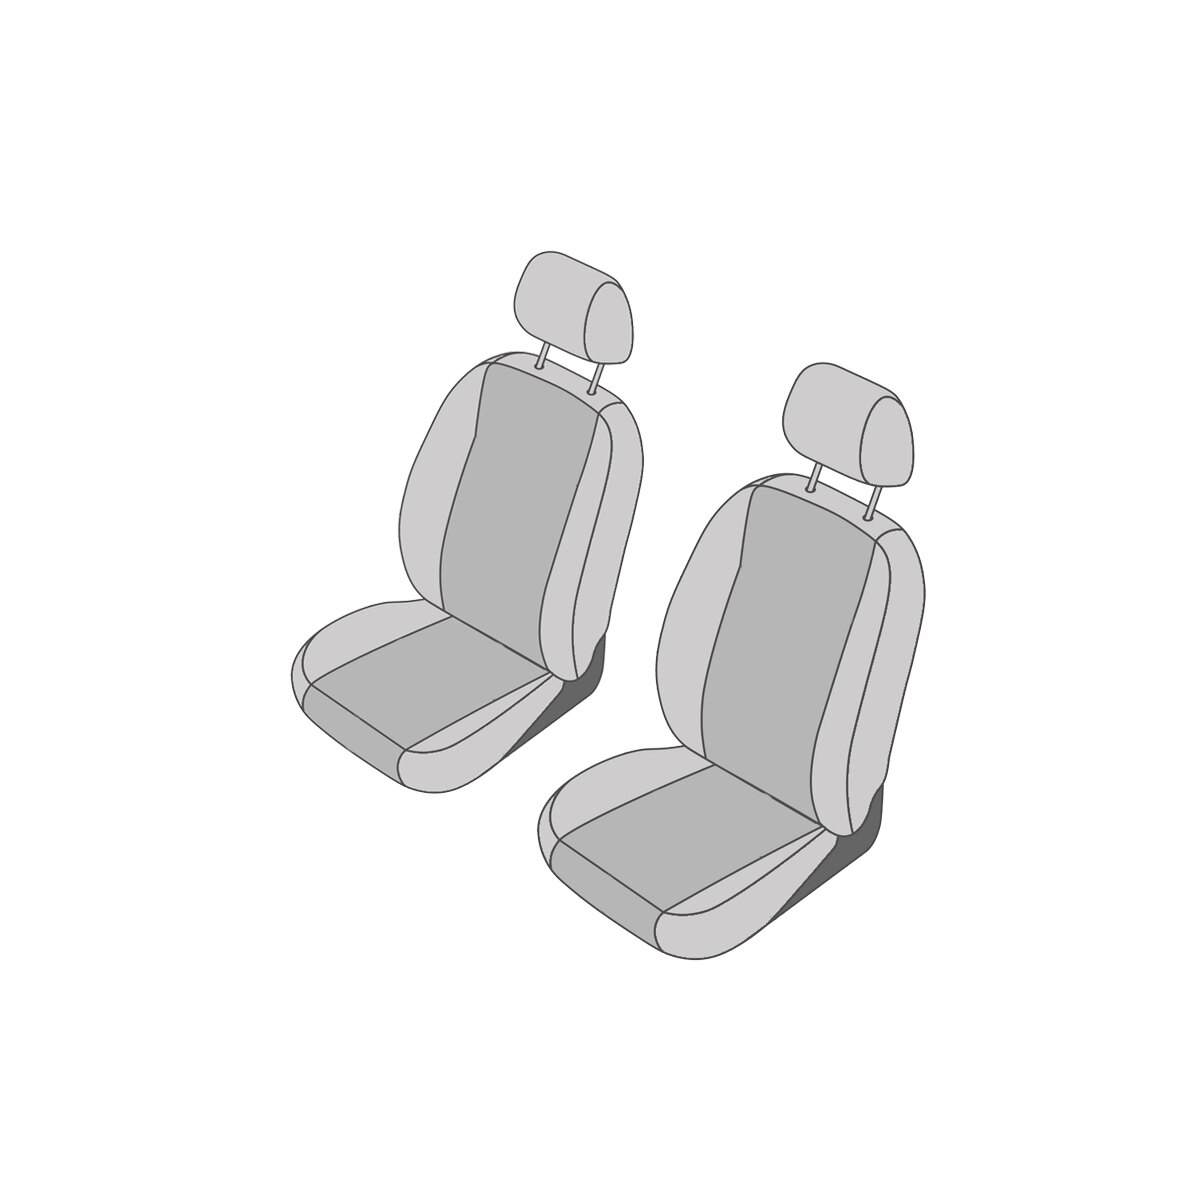 Handao-US Auto-Autositzbezüge Kunstleder Komplettset Passend für P EUGEOT 206CC 5 Sitzer Sitzbezüge rutschfest Farbe :Beige 